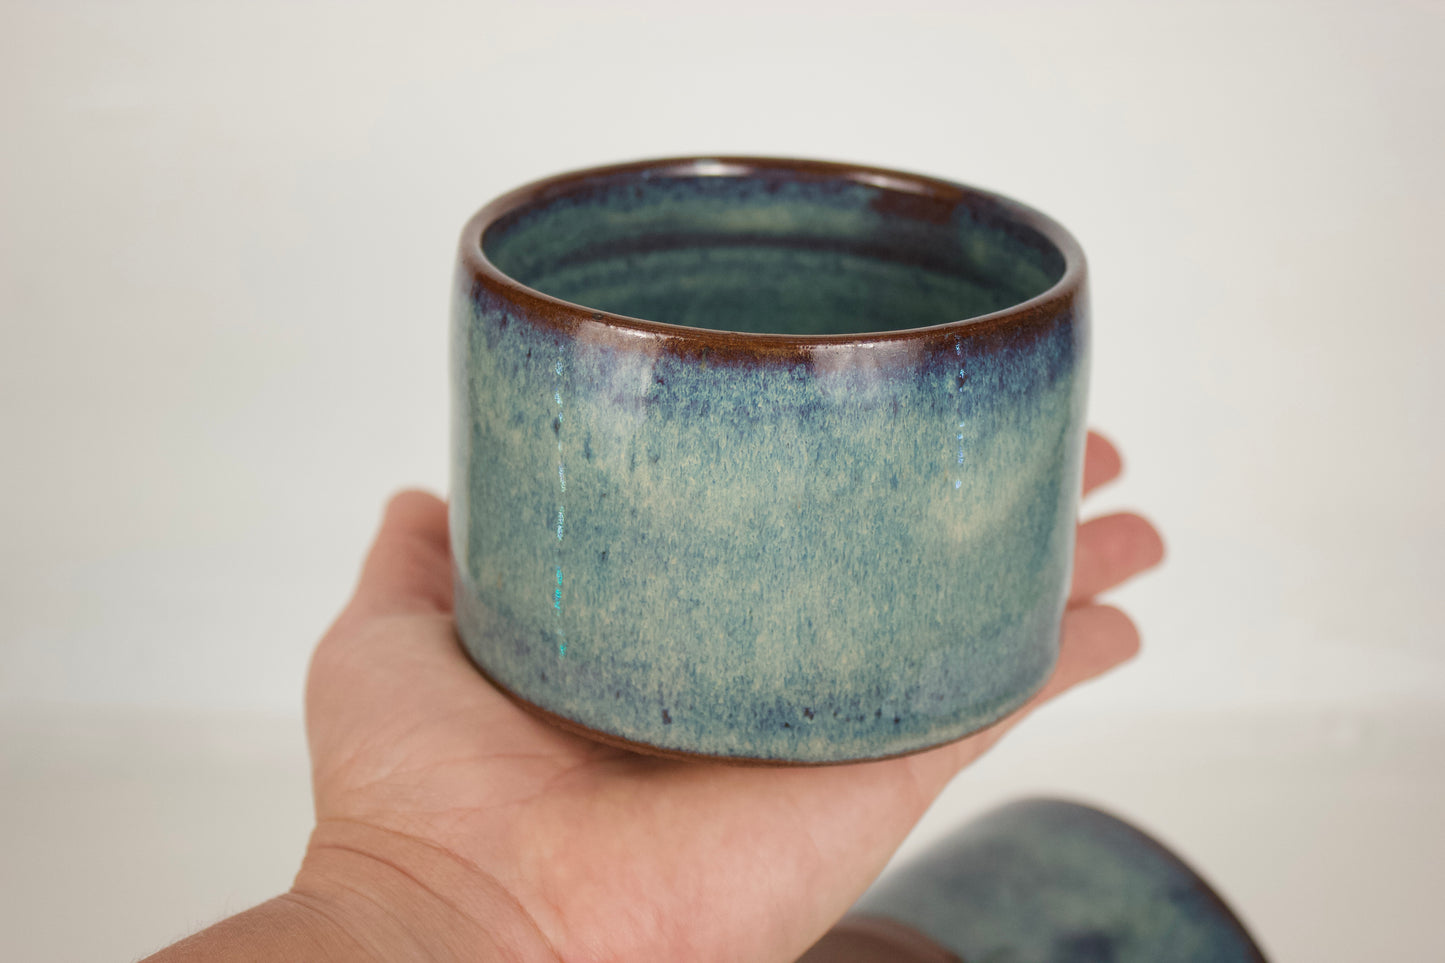 Handmade Ceramic Bowls